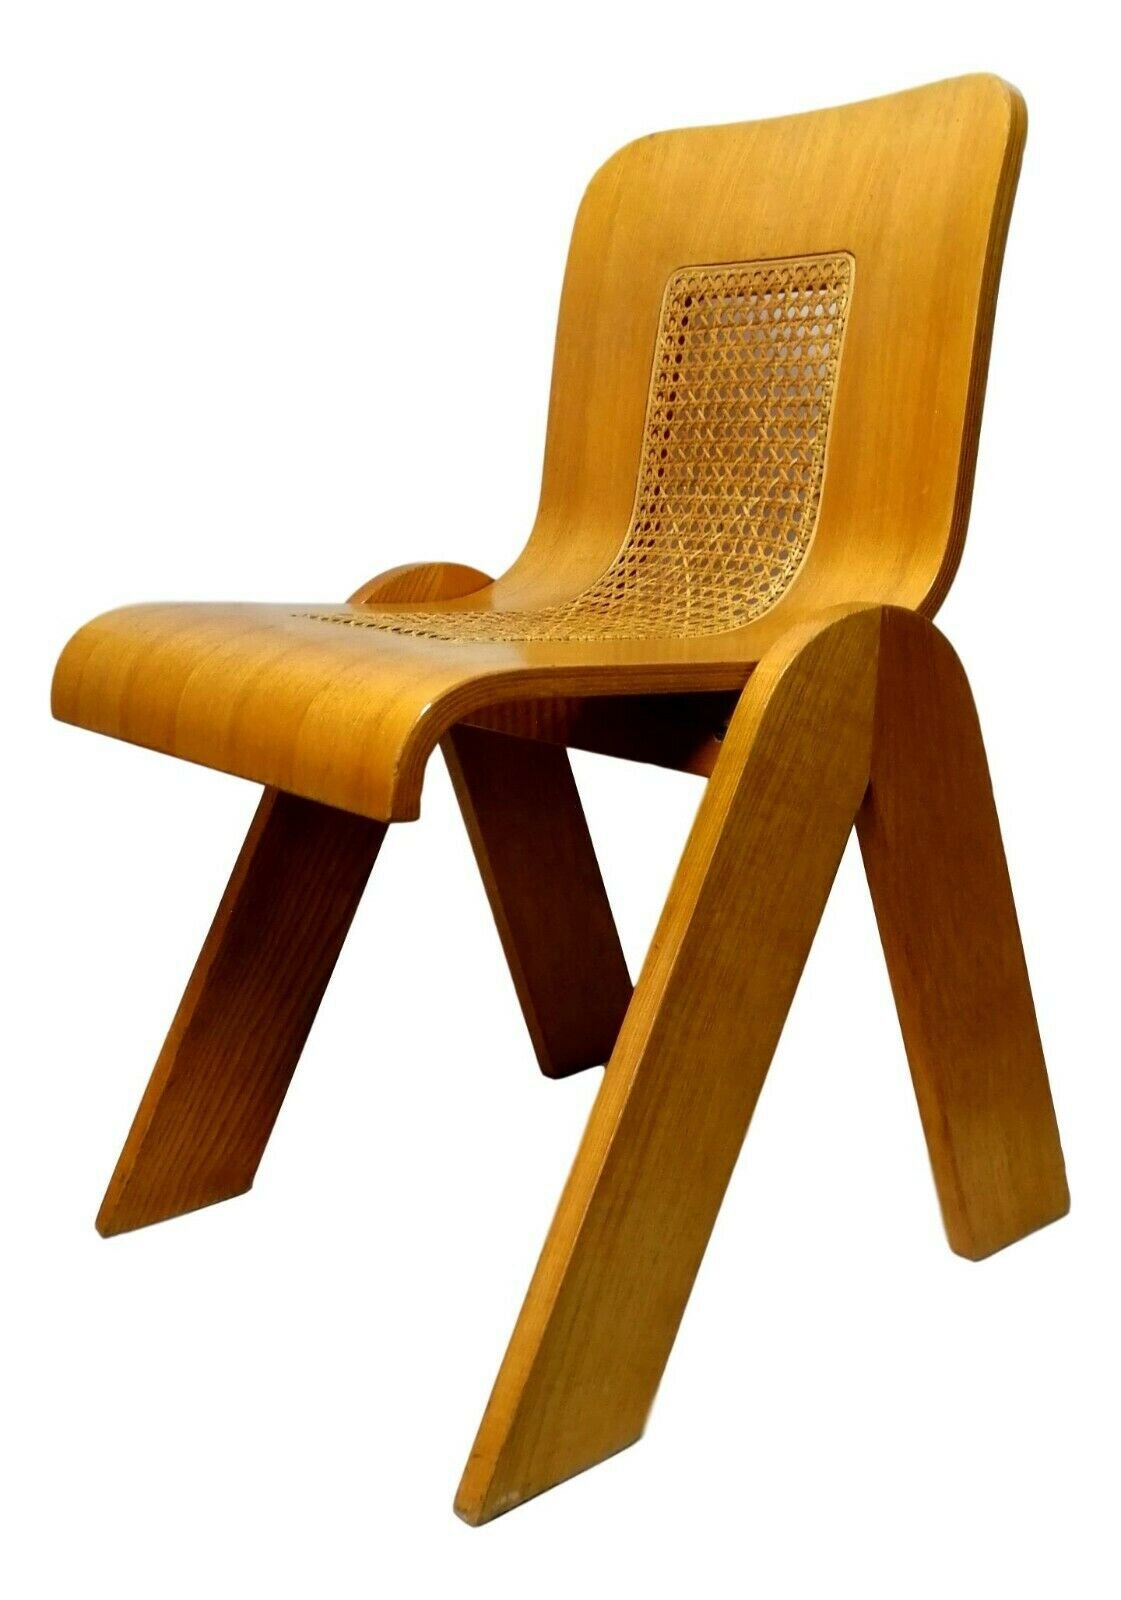 Plywood Chair by Gigi Sabadin £447.42